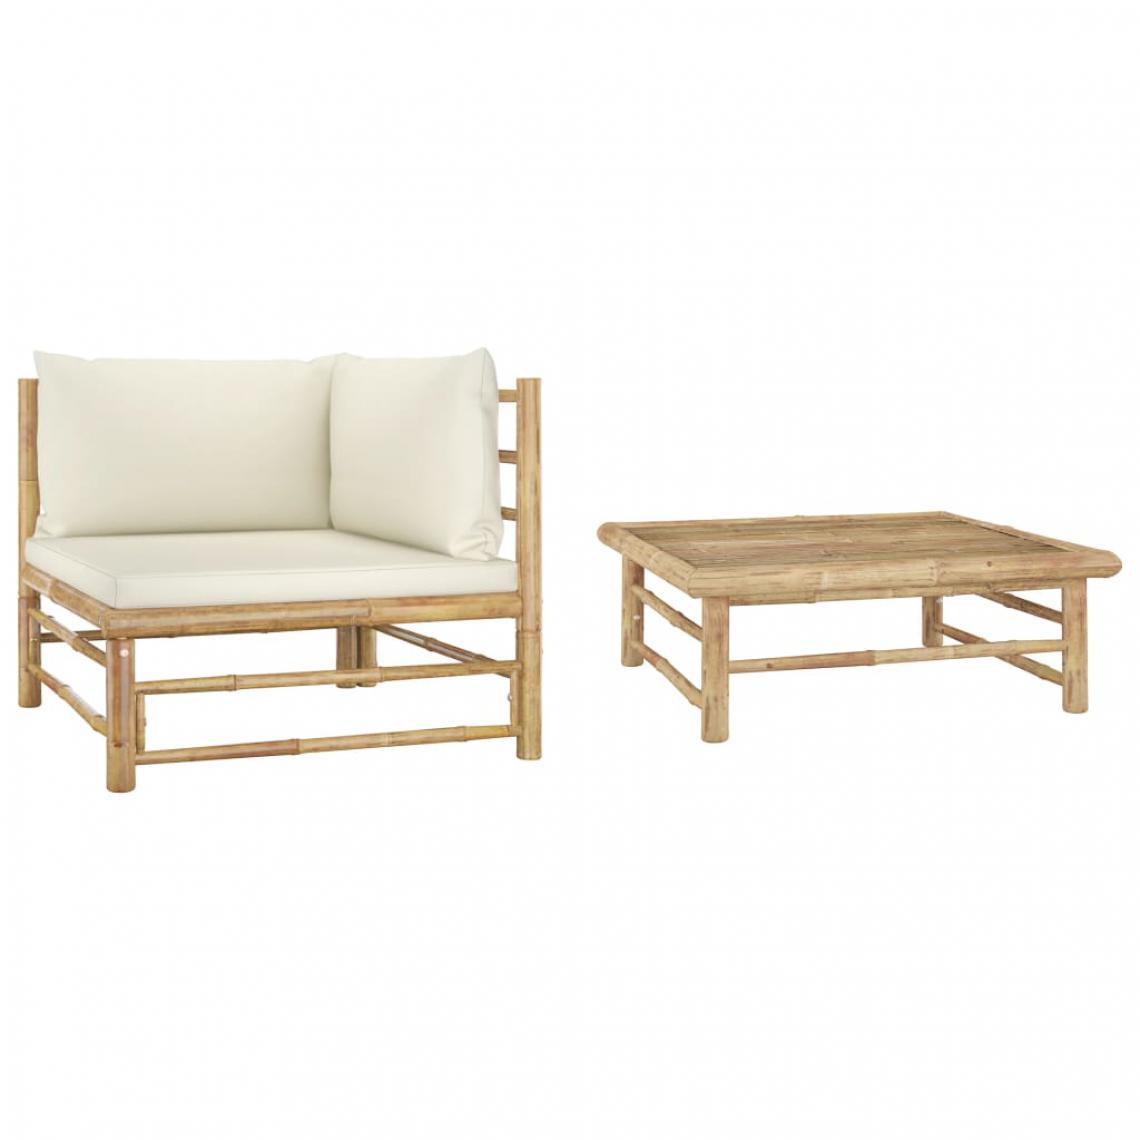 Chunhelife - Chunhelife Salon de jardin 2 pcs avec coussins blanc crème Bambou - Ensembles canapés et fauteuils